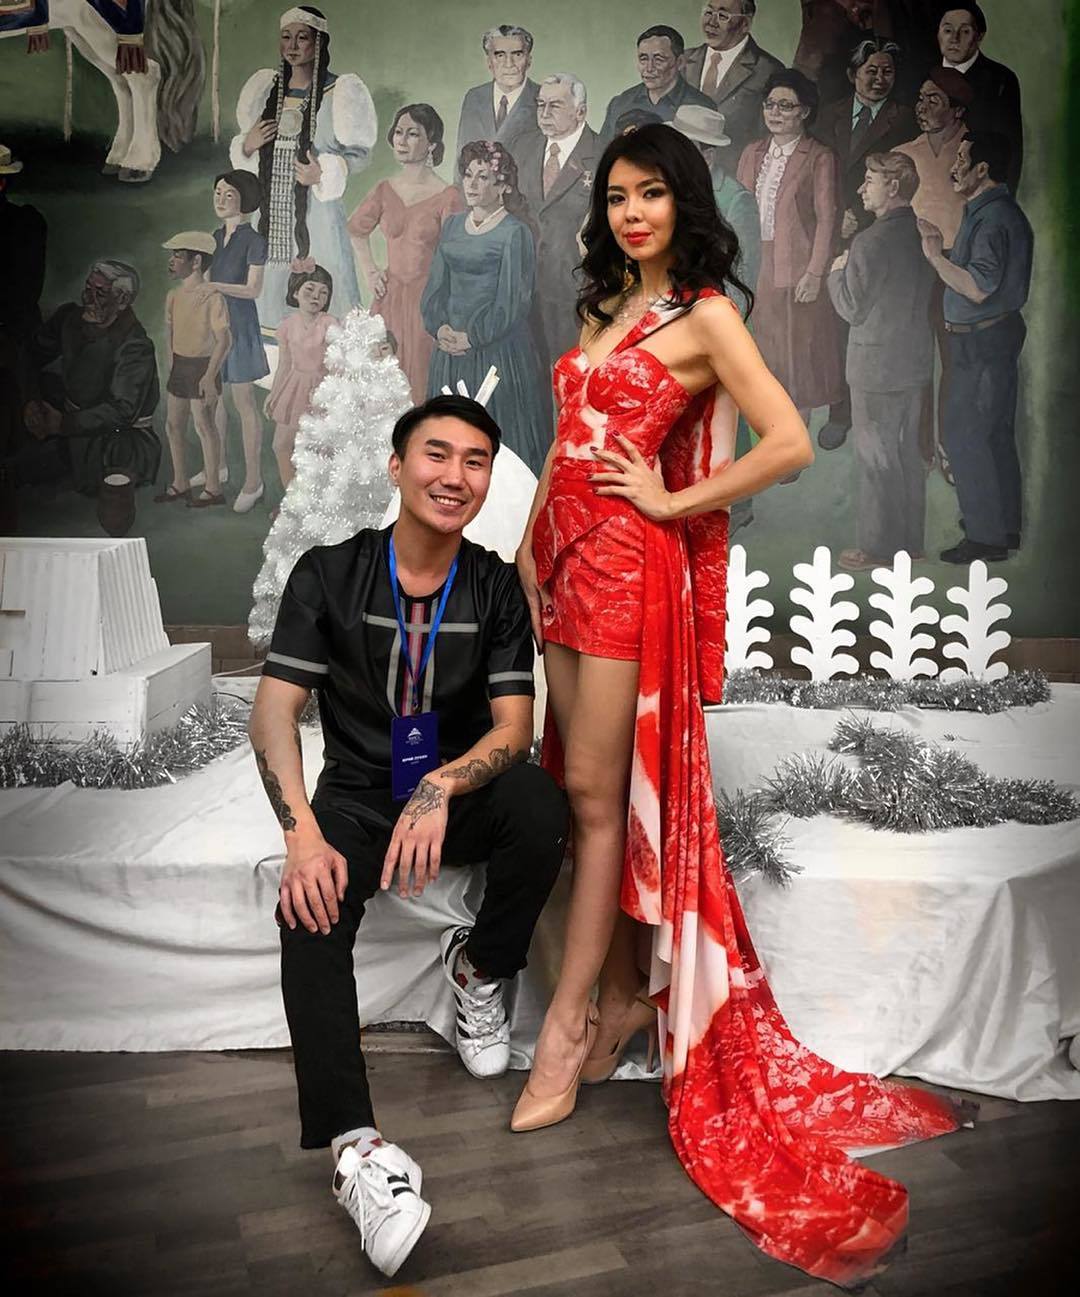 Платье из мяса на конкурсе красоты в Якутии было социальным экспериментом